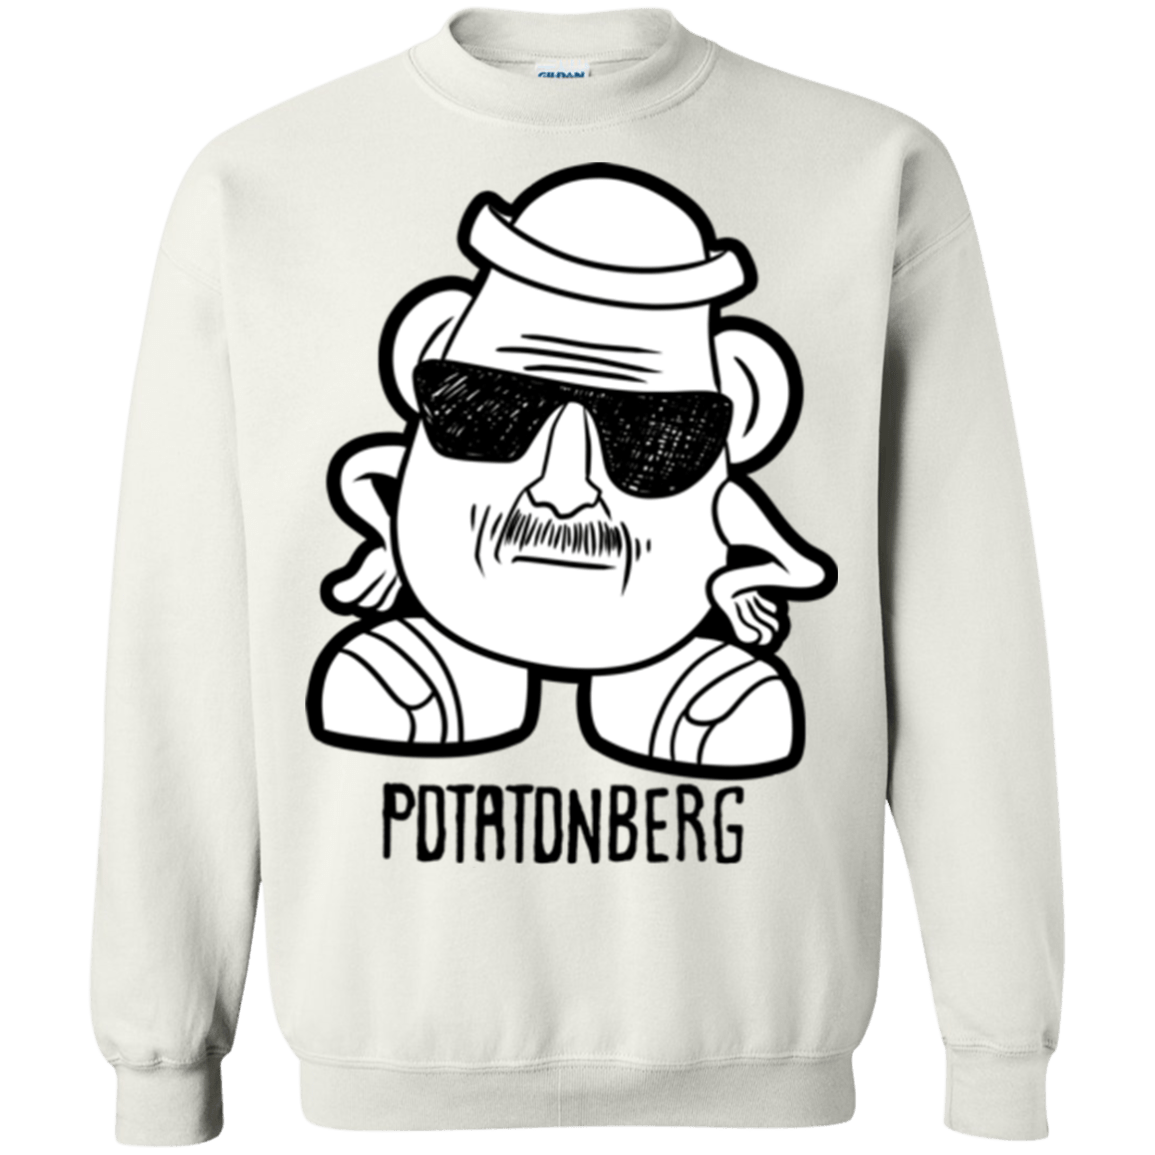 Potatonberg Crewneck Sweatshirt